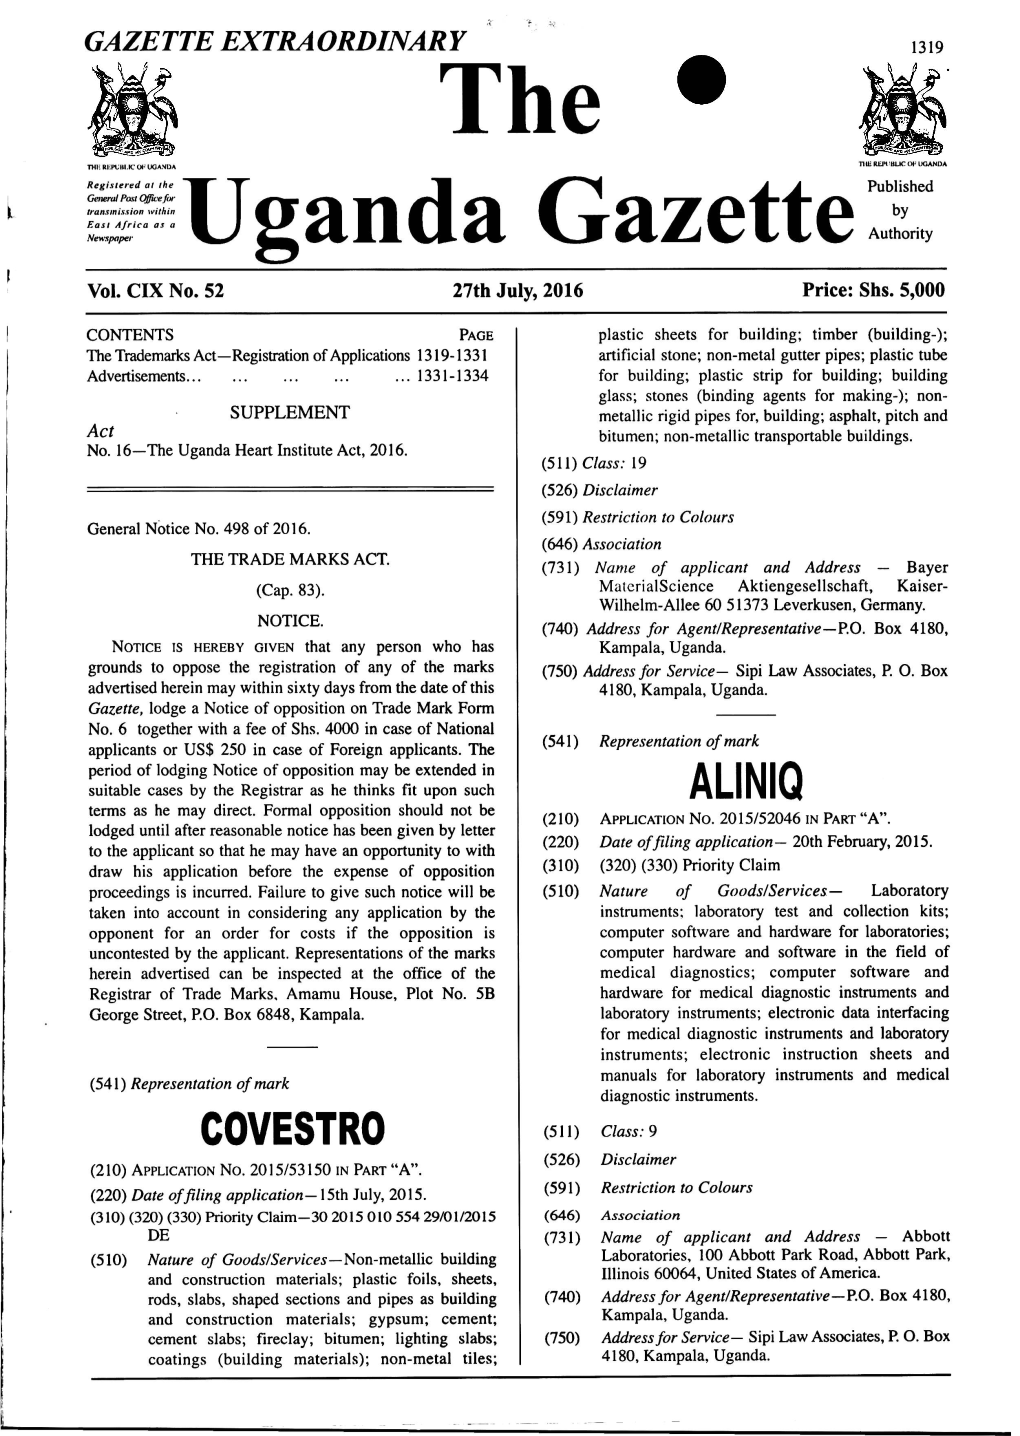 The ^Uganda Gazettepublished